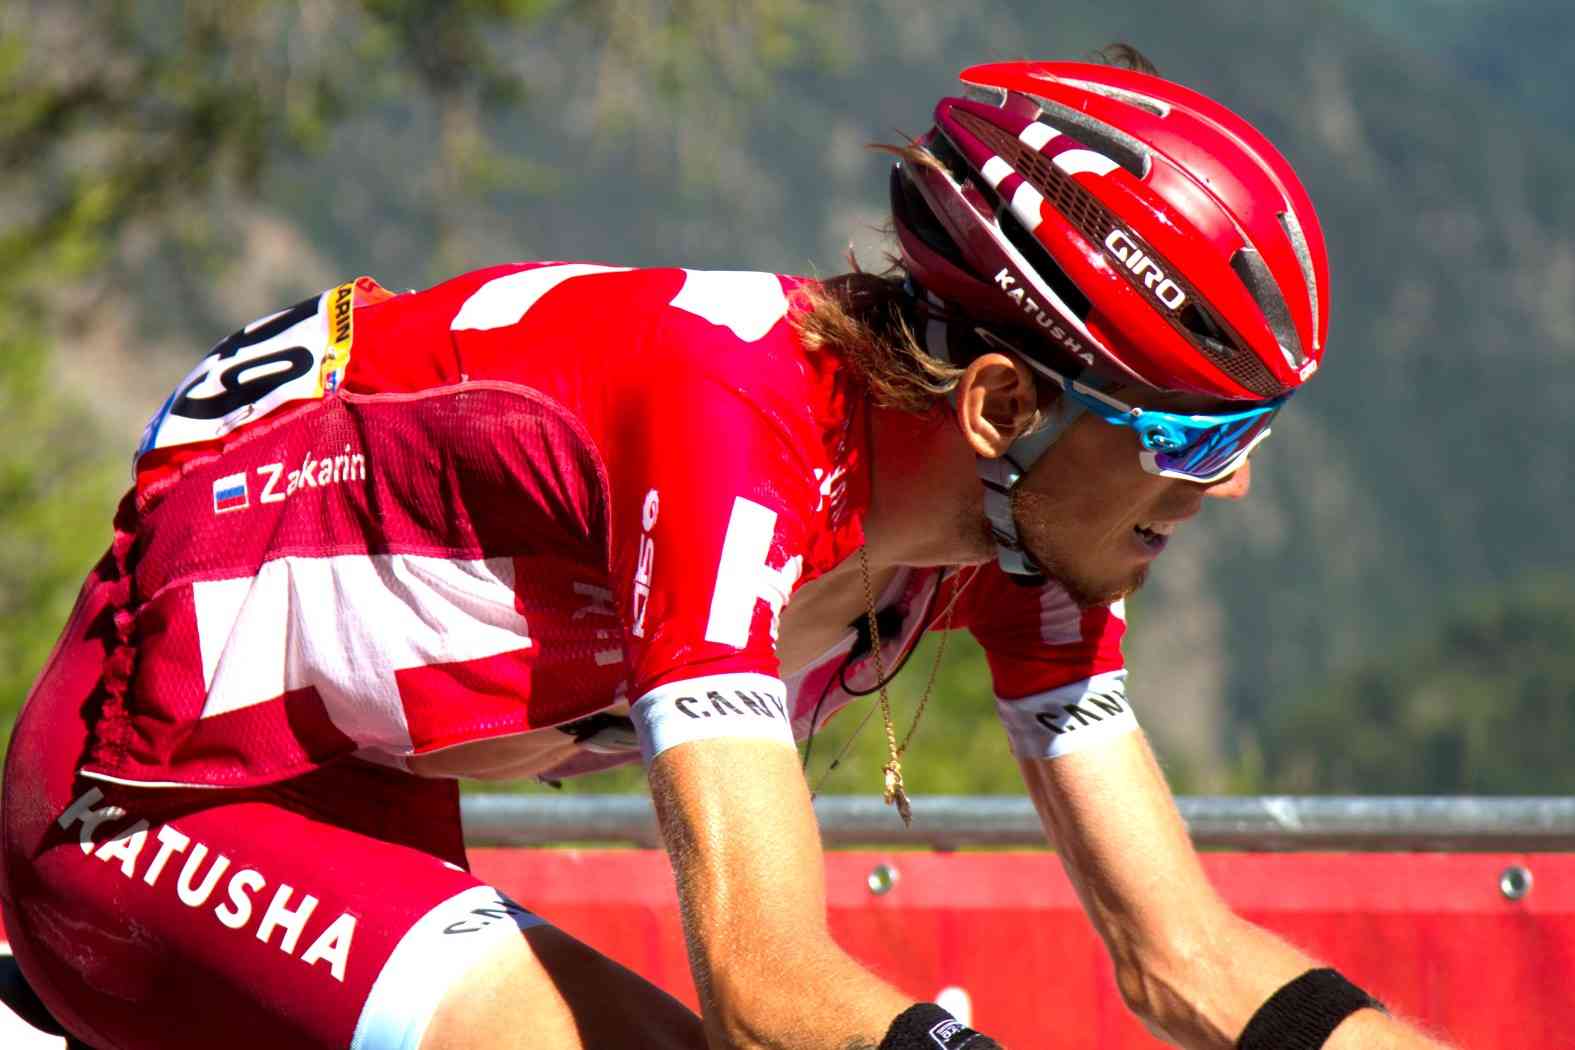 Giro d'Italia 2019 a Zakarin il primo arrivo in salita. Lopez e Yates crollano